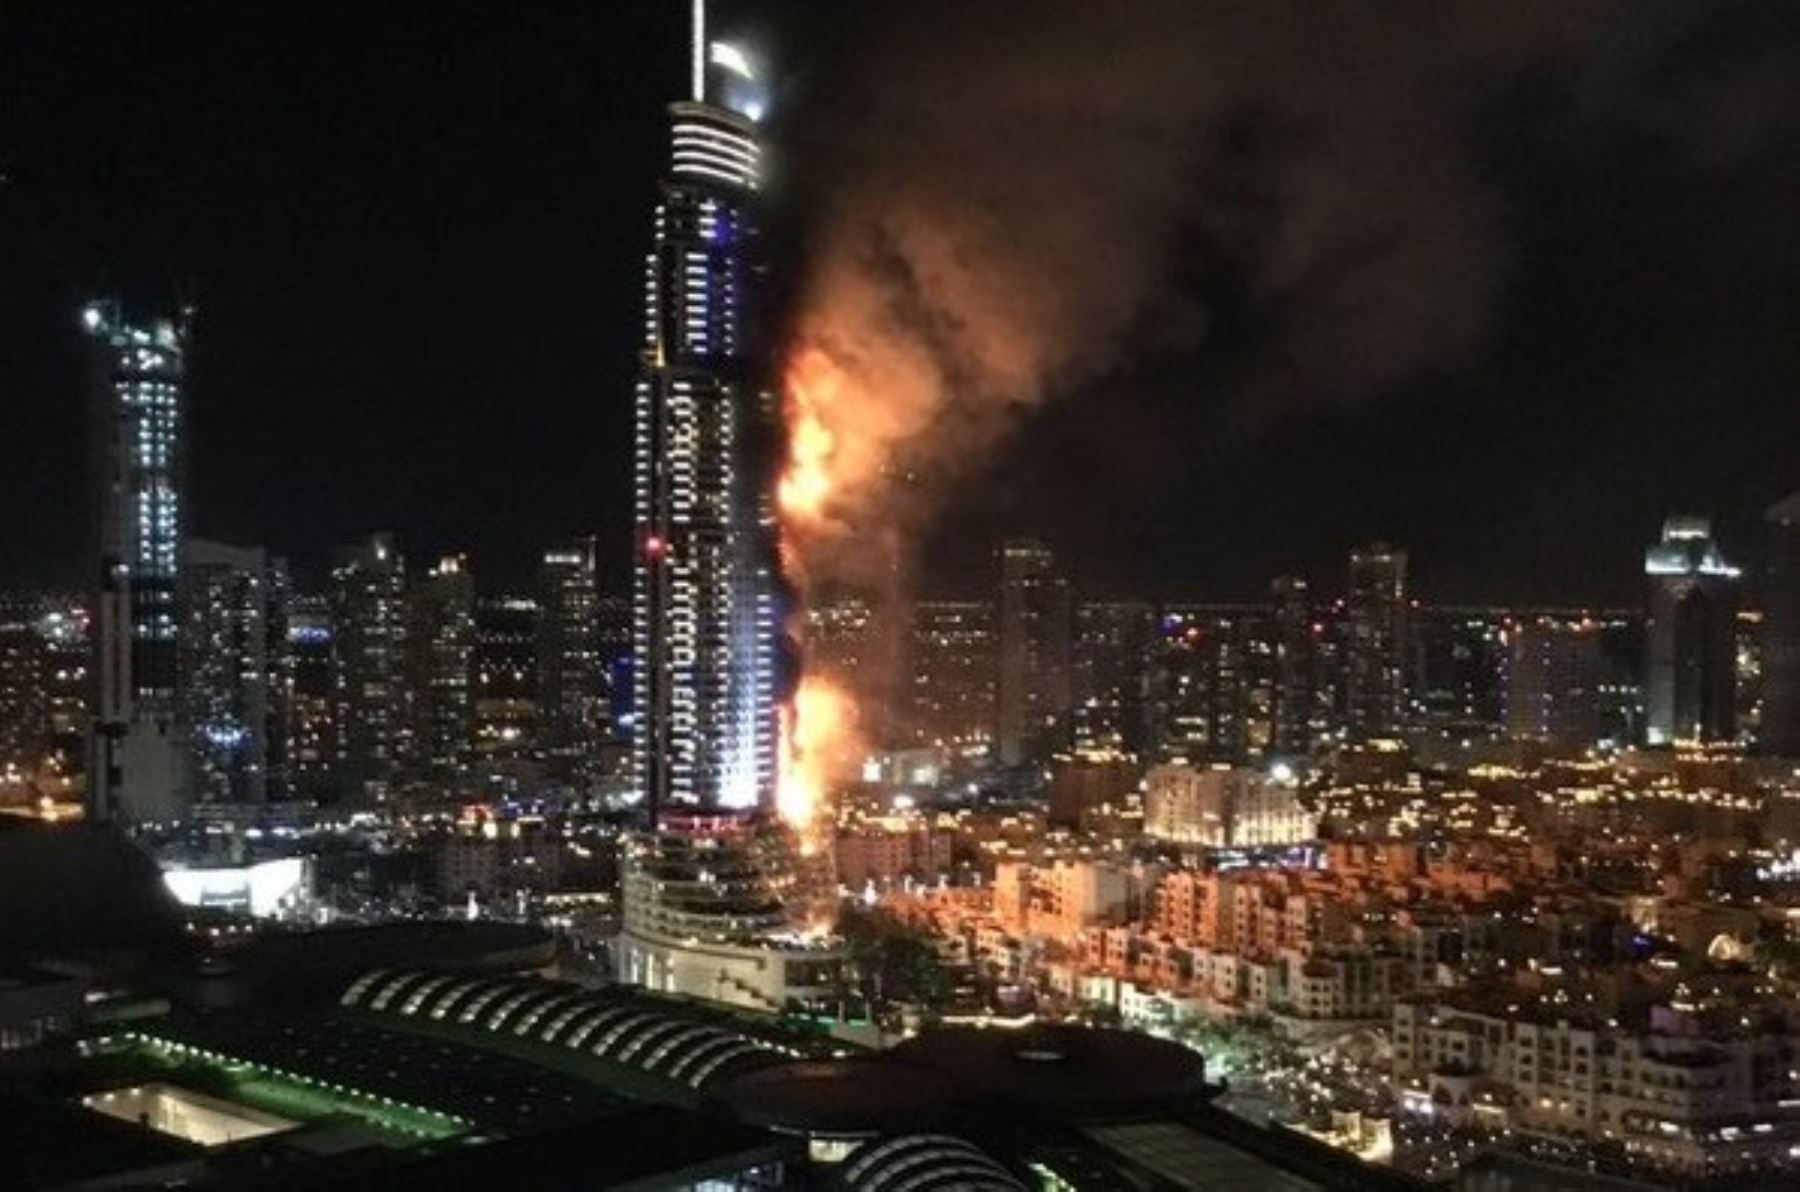 Dubái: Lujoso hotel entre llamas antes de celebración de Año nuevo. Foto: INTERNET/Medios